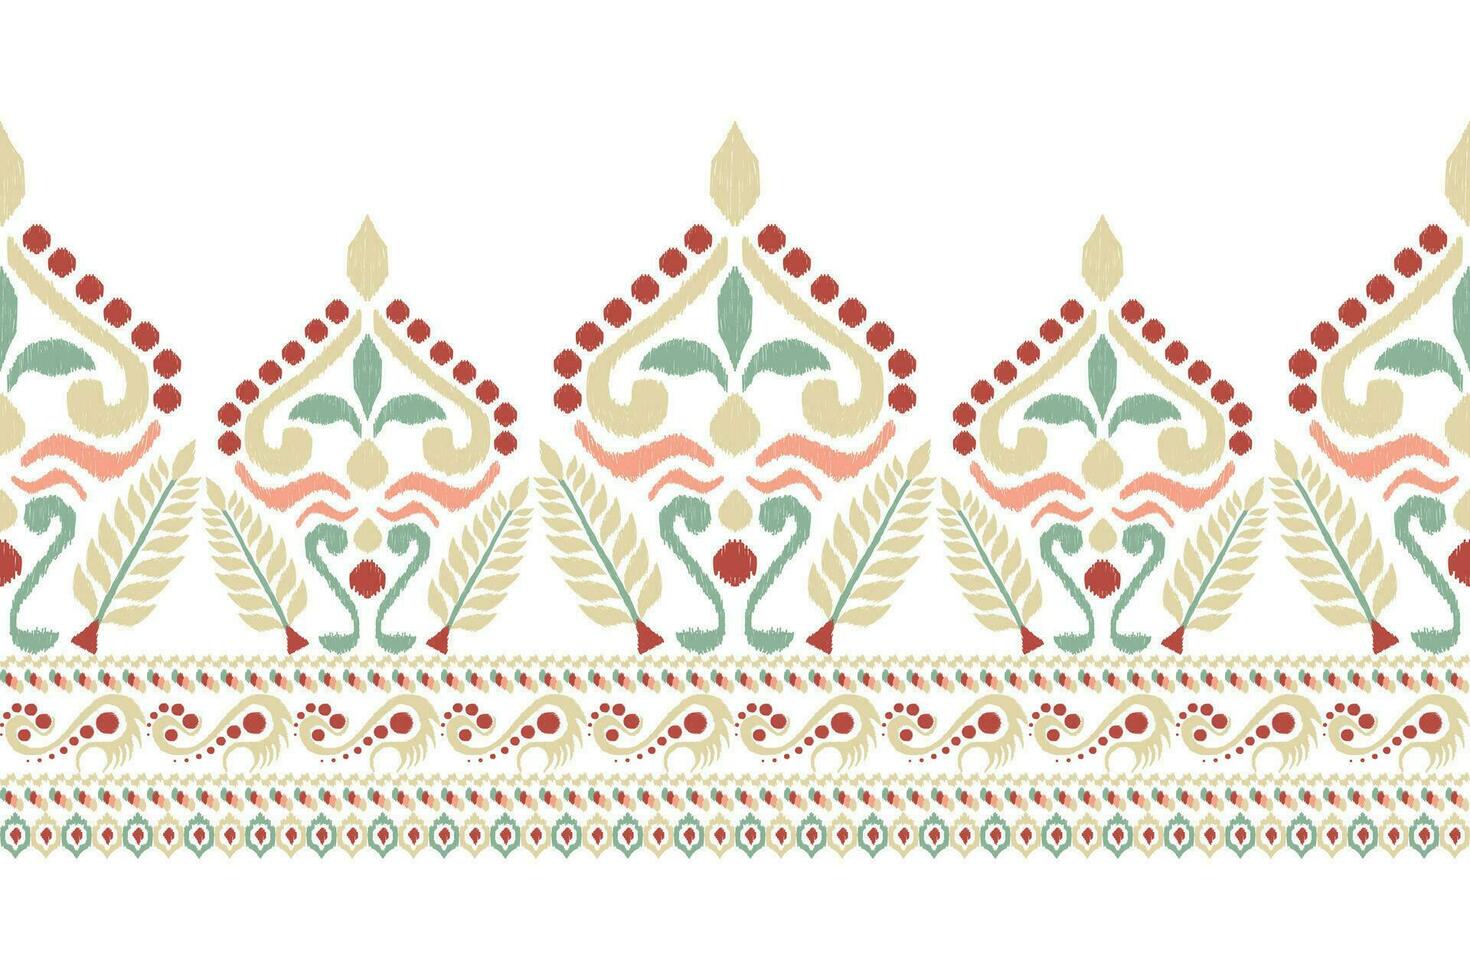 ikat floreale paisley ricamo su bianca sfondo.ikat etnico orientale modello tradizionale.azteco stile astratto vettore illustrazione.disegno per trama, tessuto, abbigliamento, avvolgimento, decorazione, pareo, sciarpa